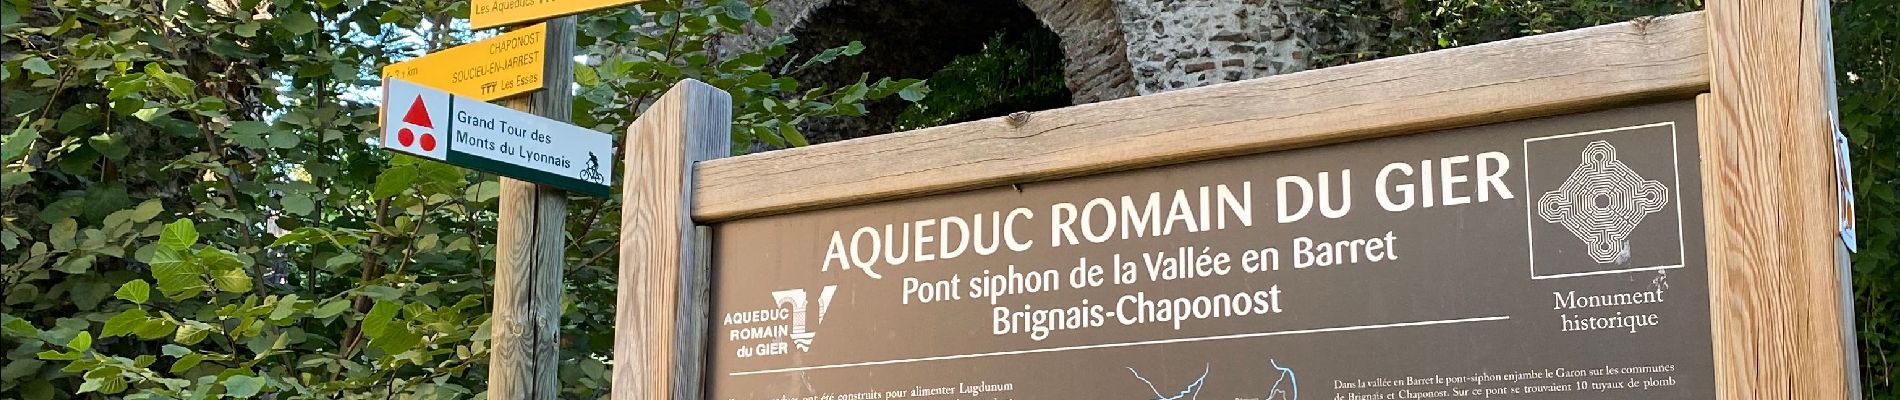 Point d'intérêt Chaponost - aqueduc romain - Photo